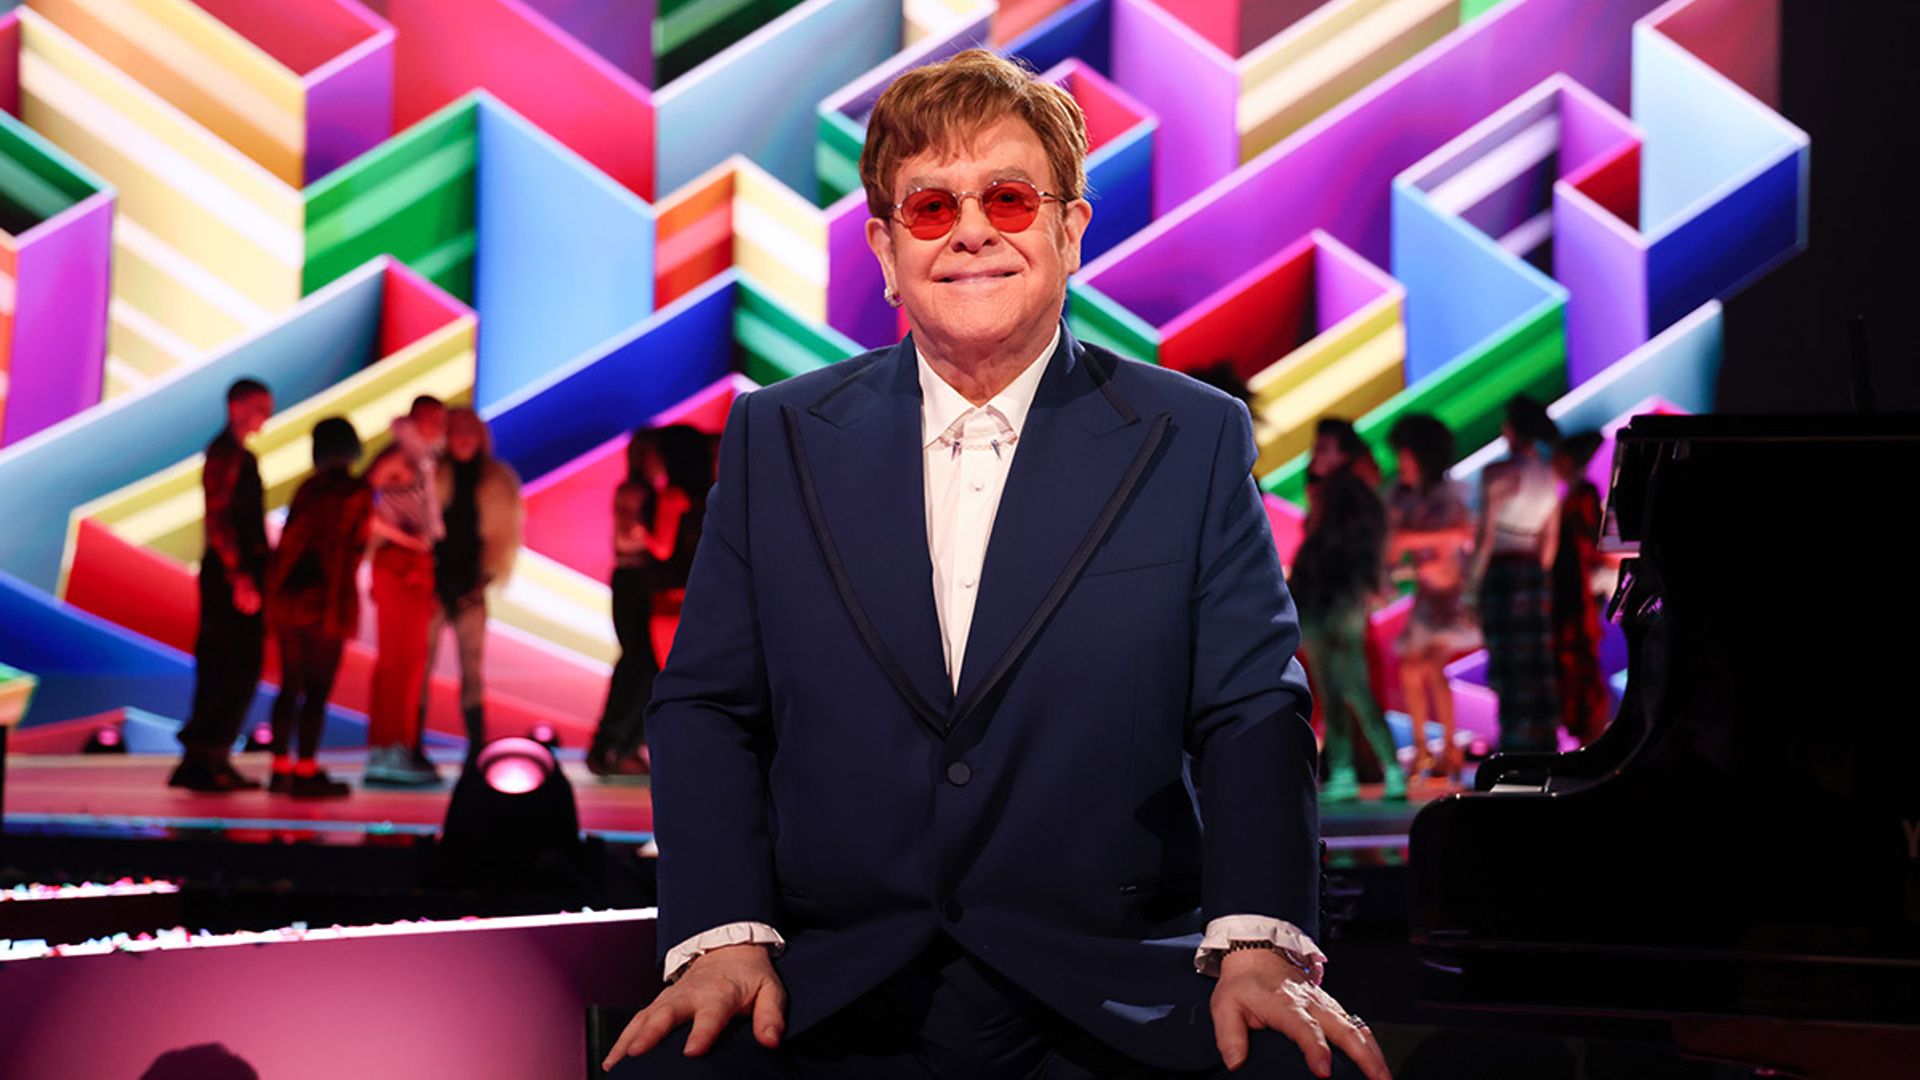 Elton John celebrates major achievement inside lavish living room